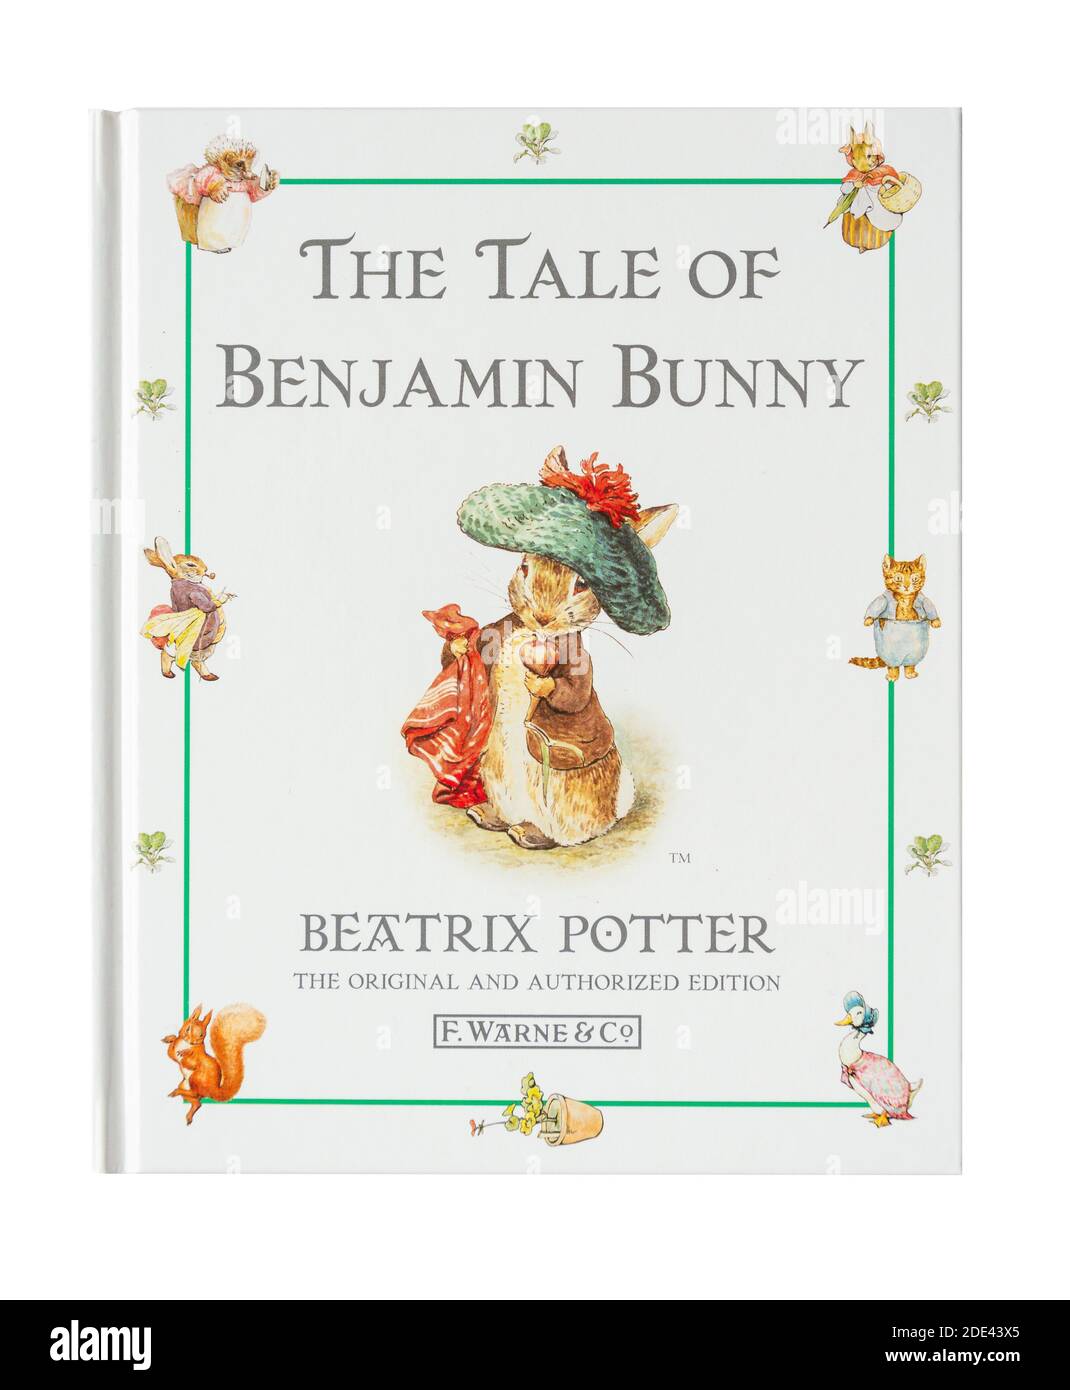 Livre pour enfants « The Tale of Benjamin Bunny » de Beatrix Potter, Grand Londres, Angleterre, Royaume-Uni Banque D'Images